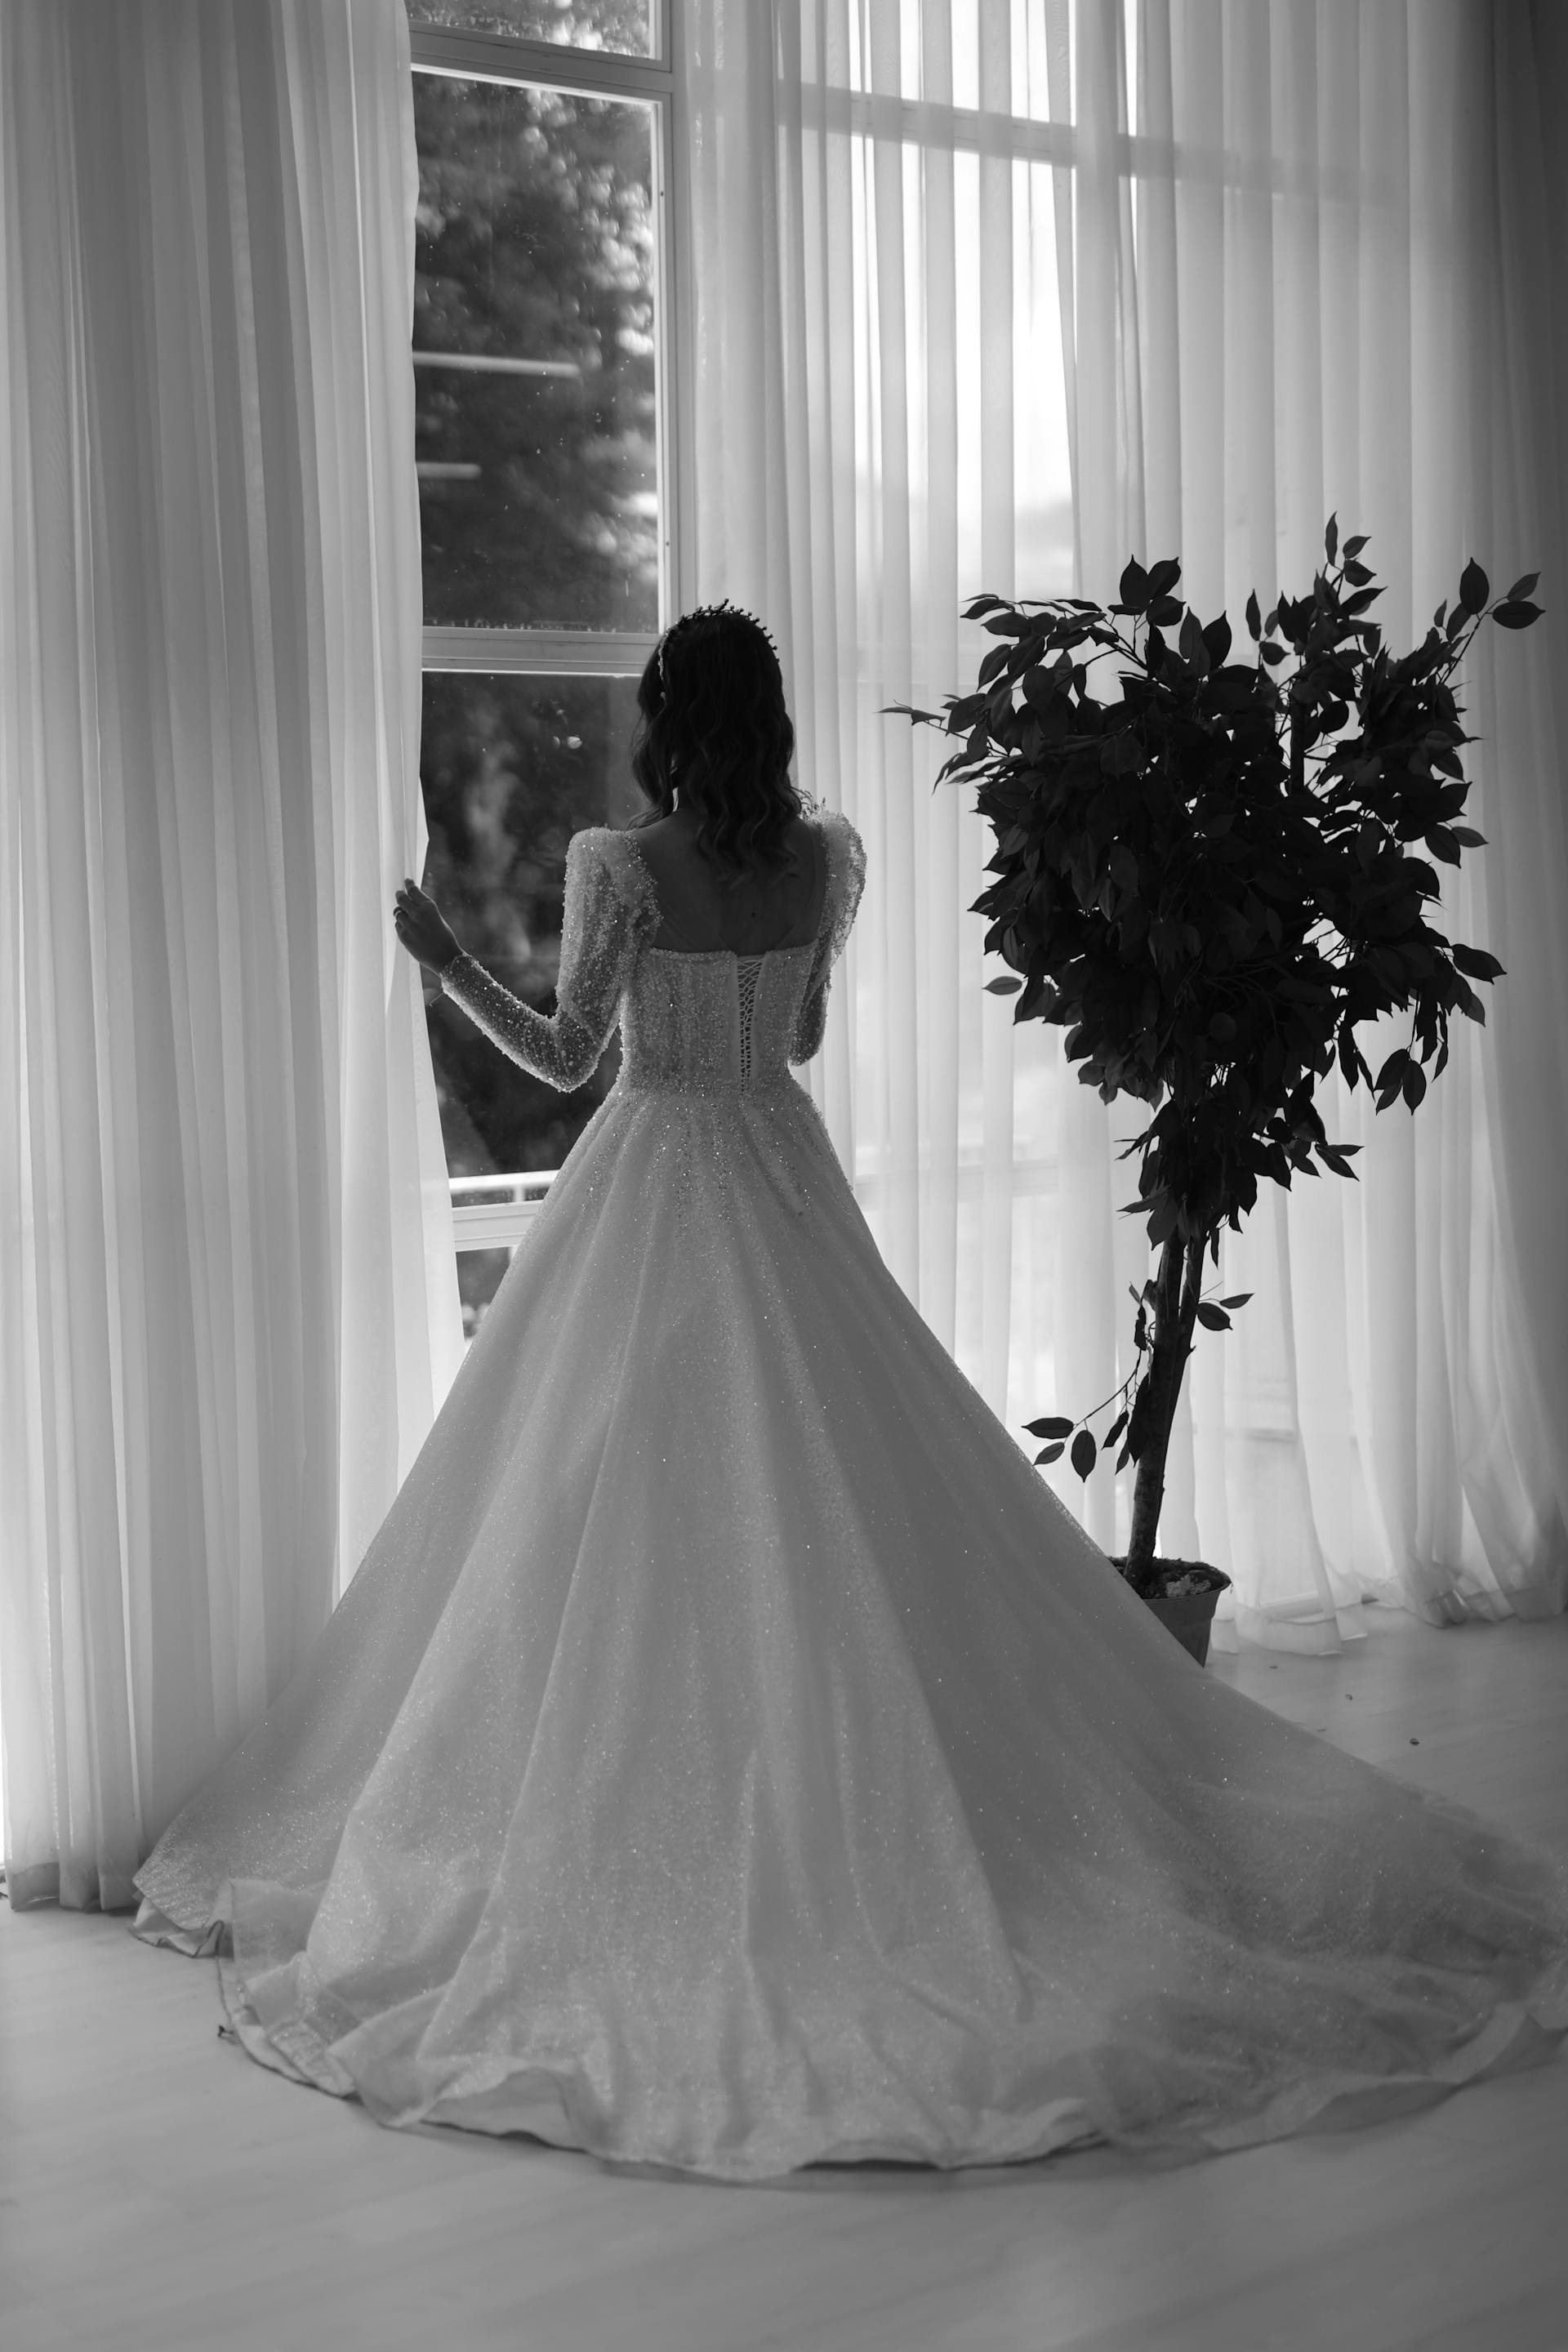 Eine Braut in einer Umkleidekabine | Quelle: Pexels